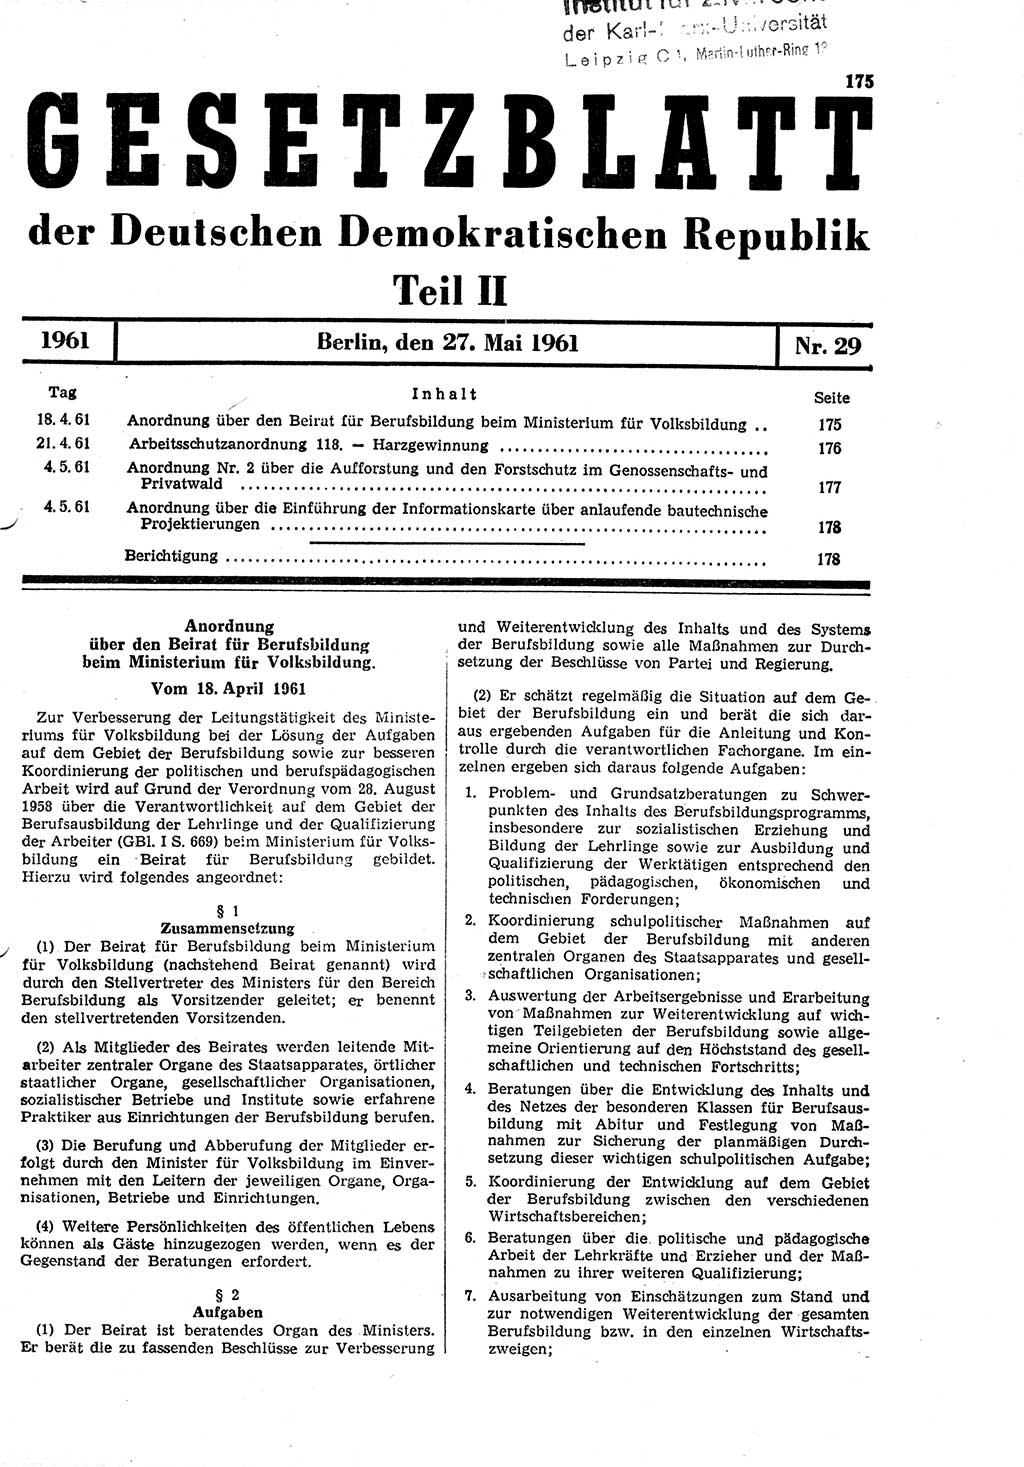 Gesetzblatt (GBl.) der Deutschen Demokratischen Republik (DDR) Teil ⅠⅠ 1961, Seite 175 (GBl. DDR ⅠⅠ 1961, S. 175)